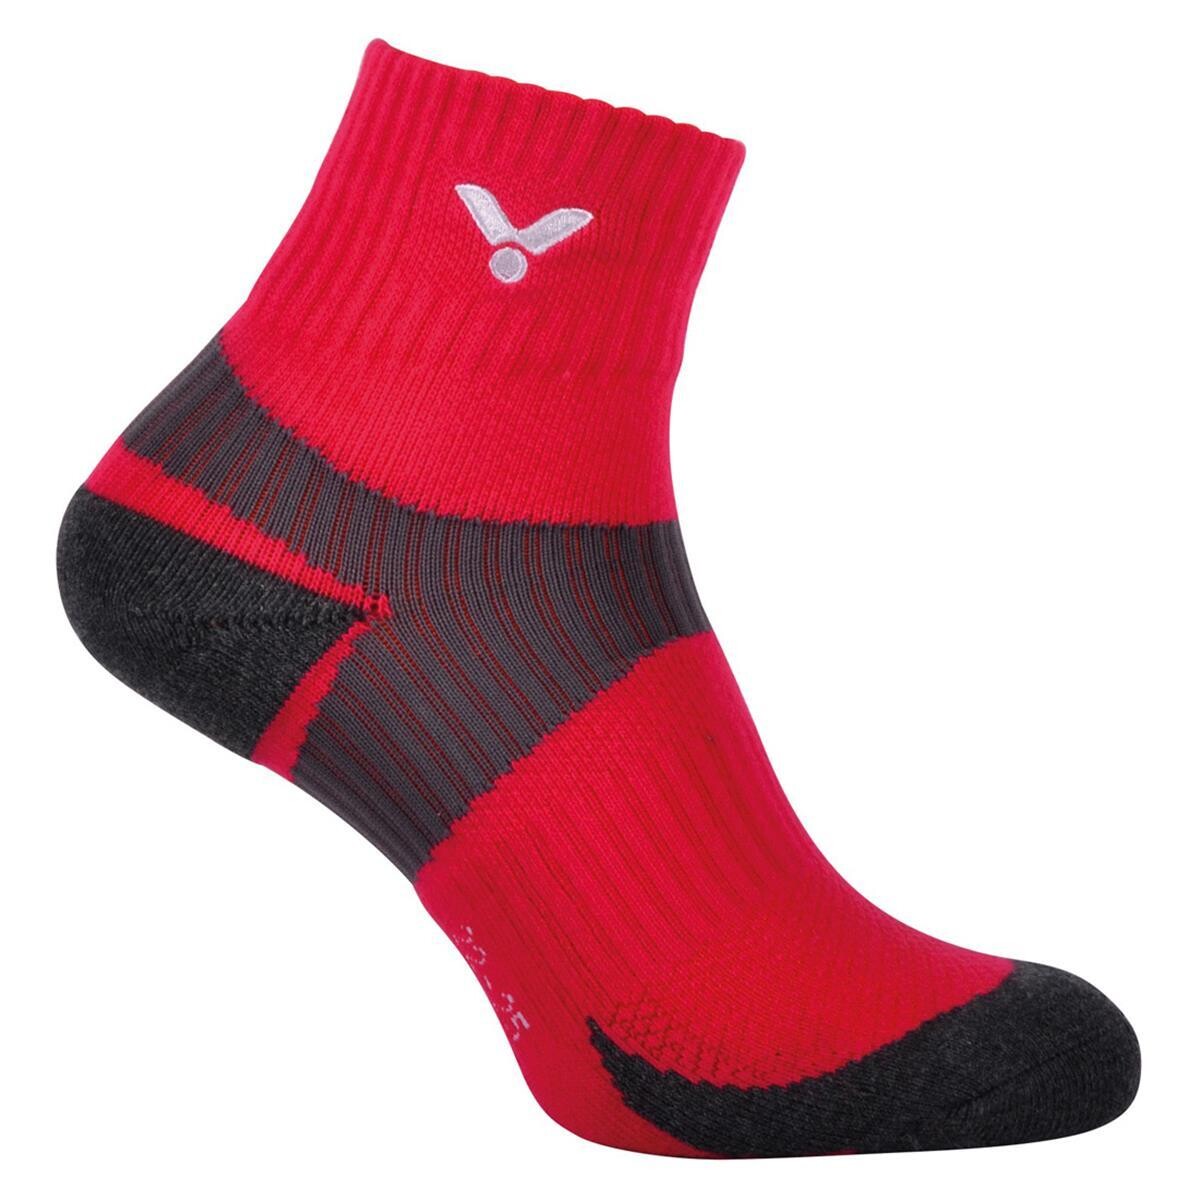 Victor Sneaker Socks Pink SK239 - 1 Pair